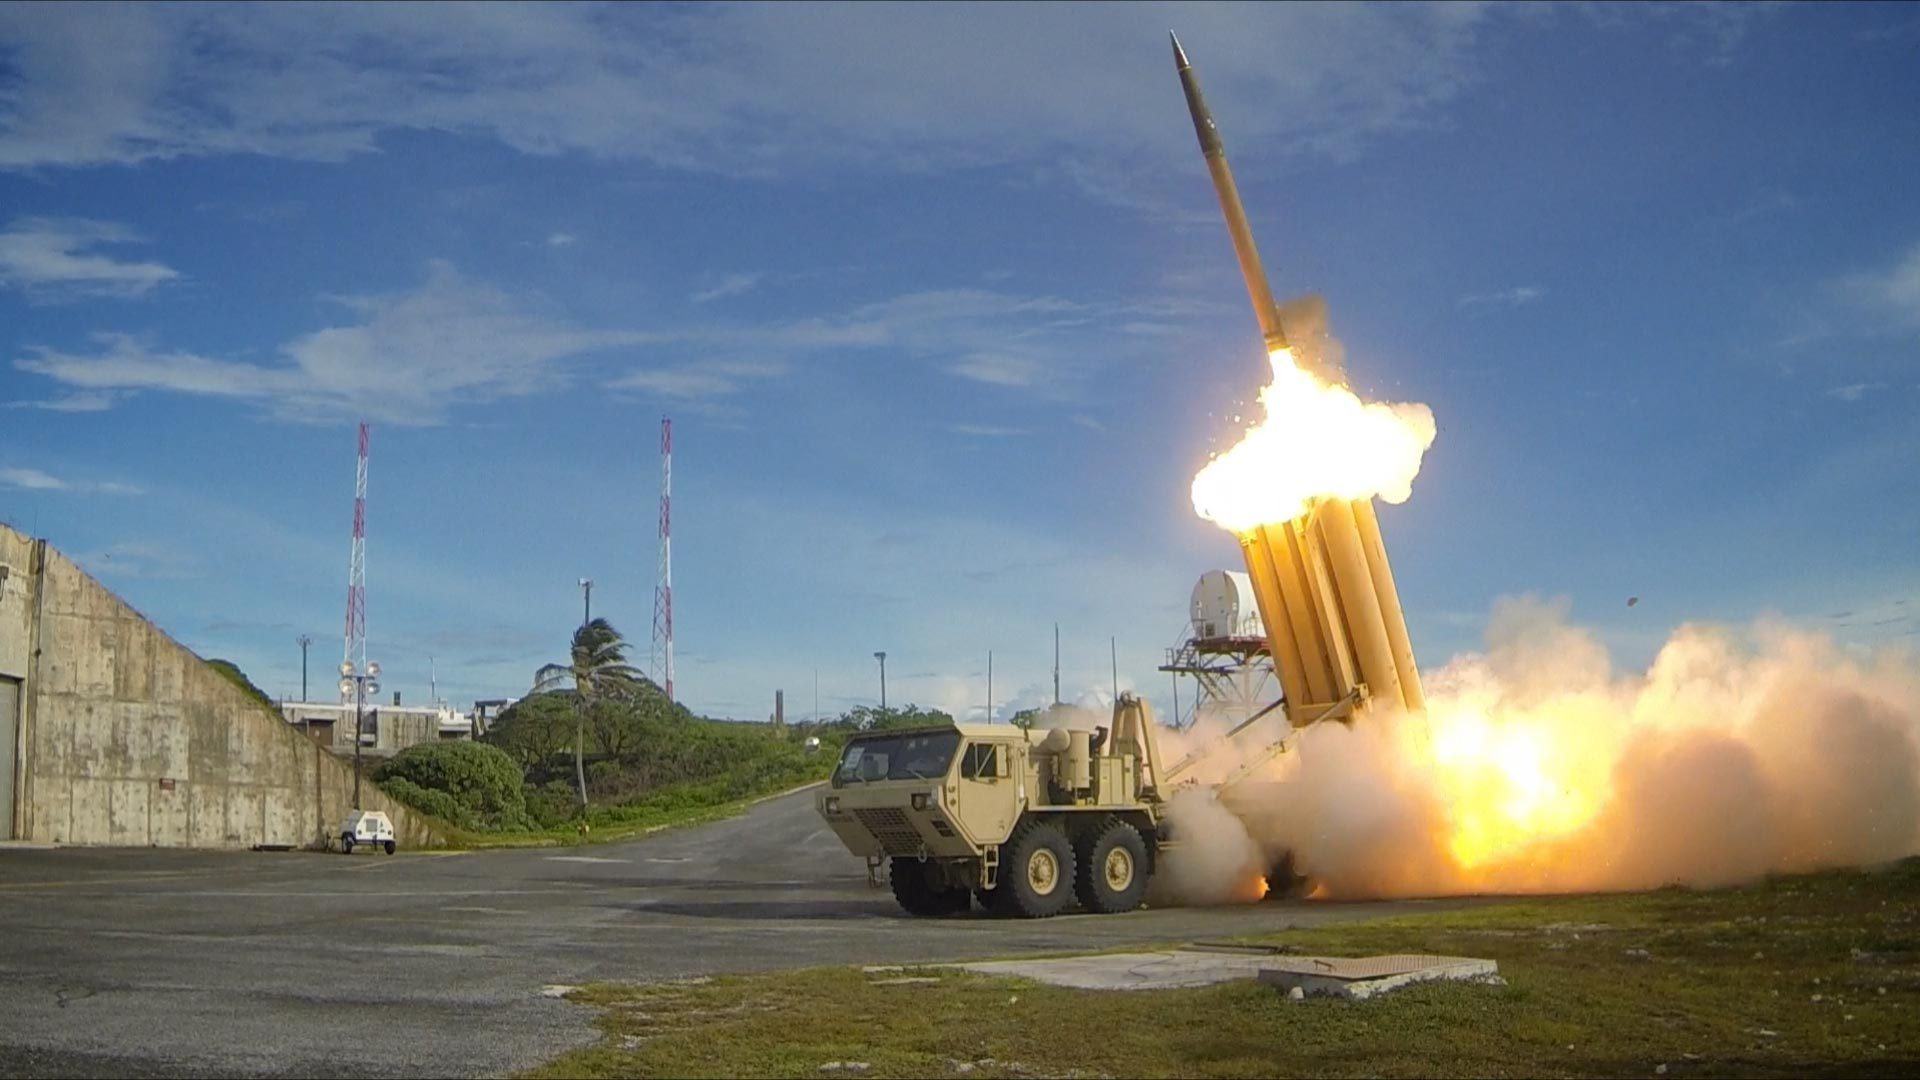 Gli Stati Uniti dispiegheranno il THAAD nella Repubblica di Corea - La Corte costituzionale respinge la petizione per vietare il dispiegamento del sistema di difesa missilistico